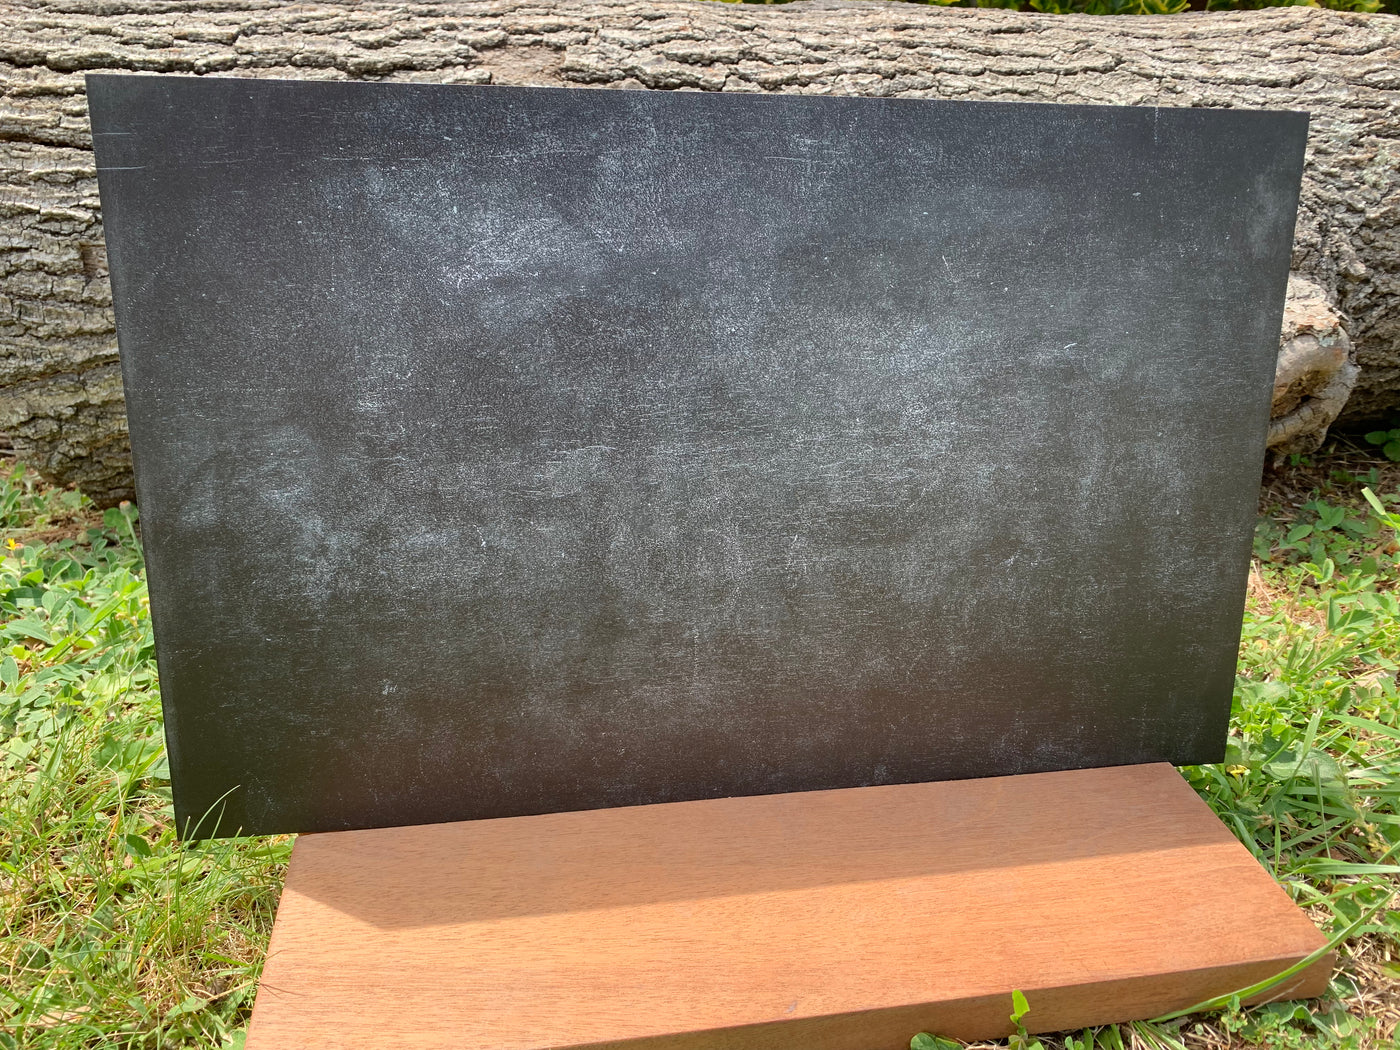 PatternPly® Dusty Black Chalkboard